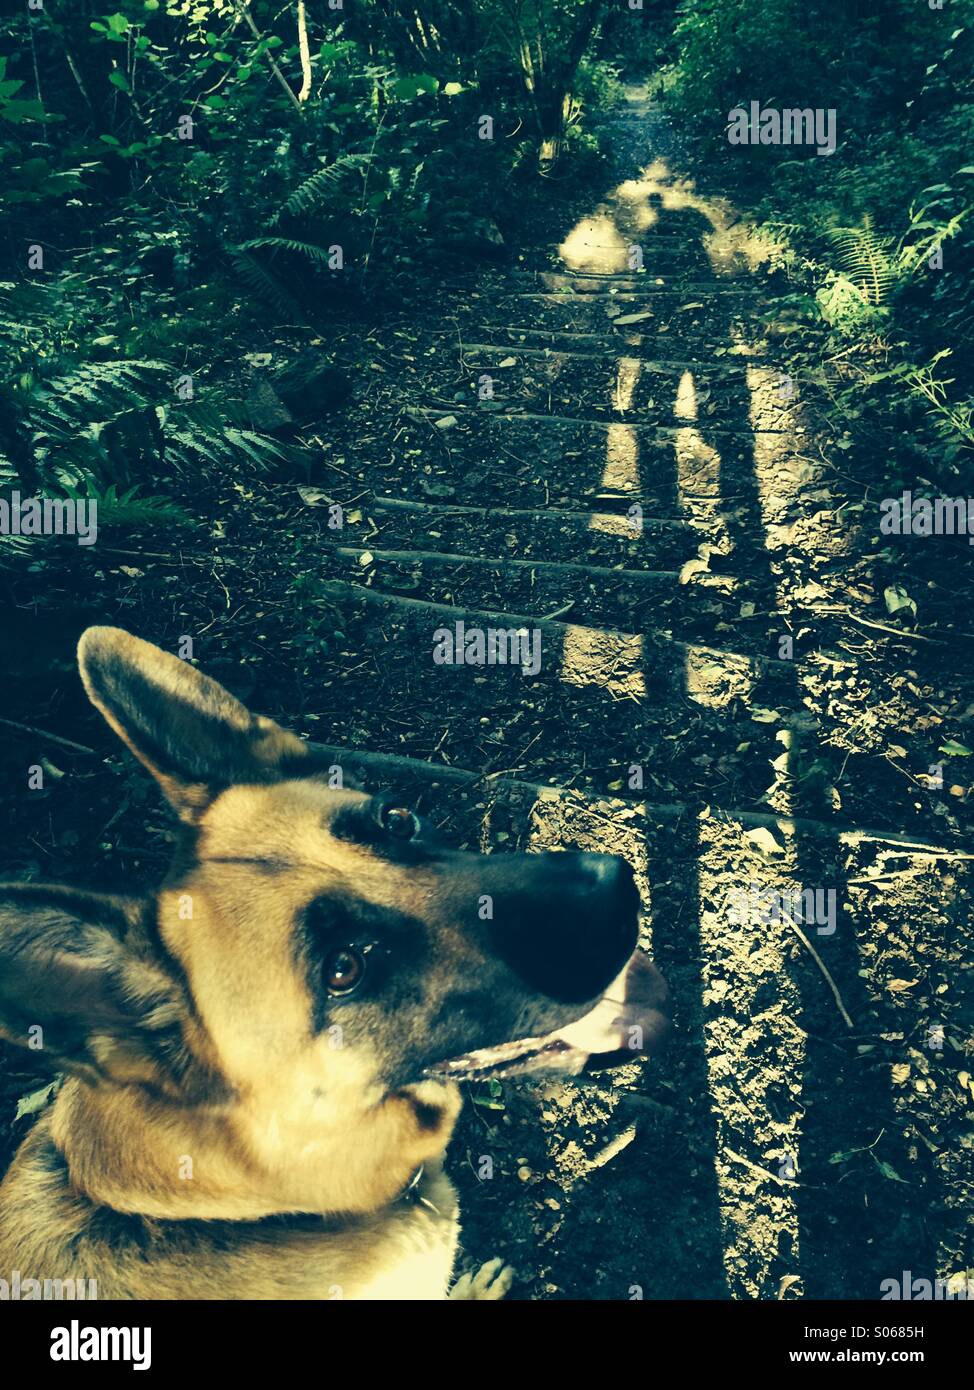 Hund auf Spaziergang sehen Sie in der Kamera Kistenverpackung Schatten im Wald Stockfoto